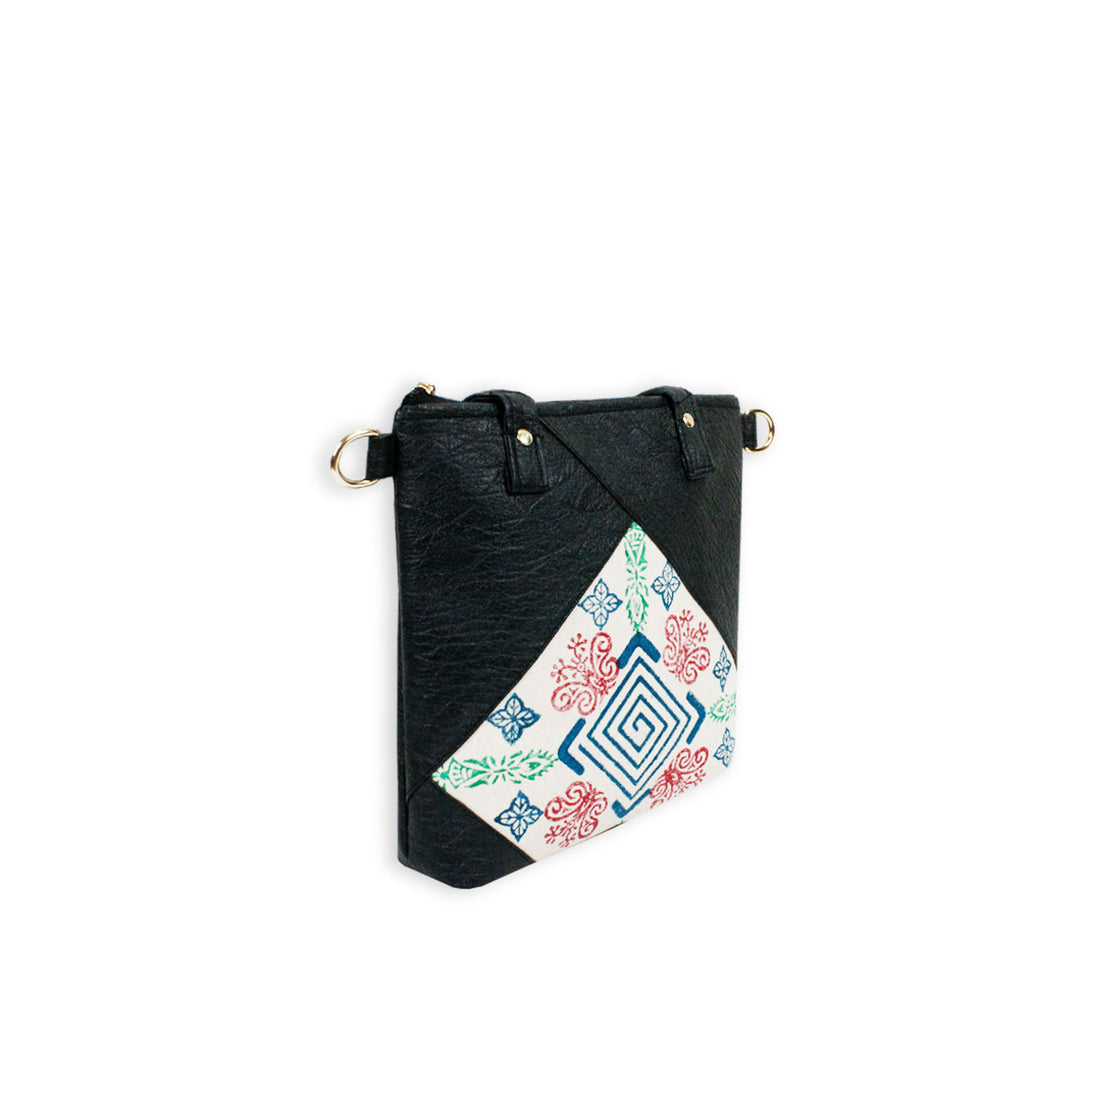 Block-Printed Diamond Handbag with Sling